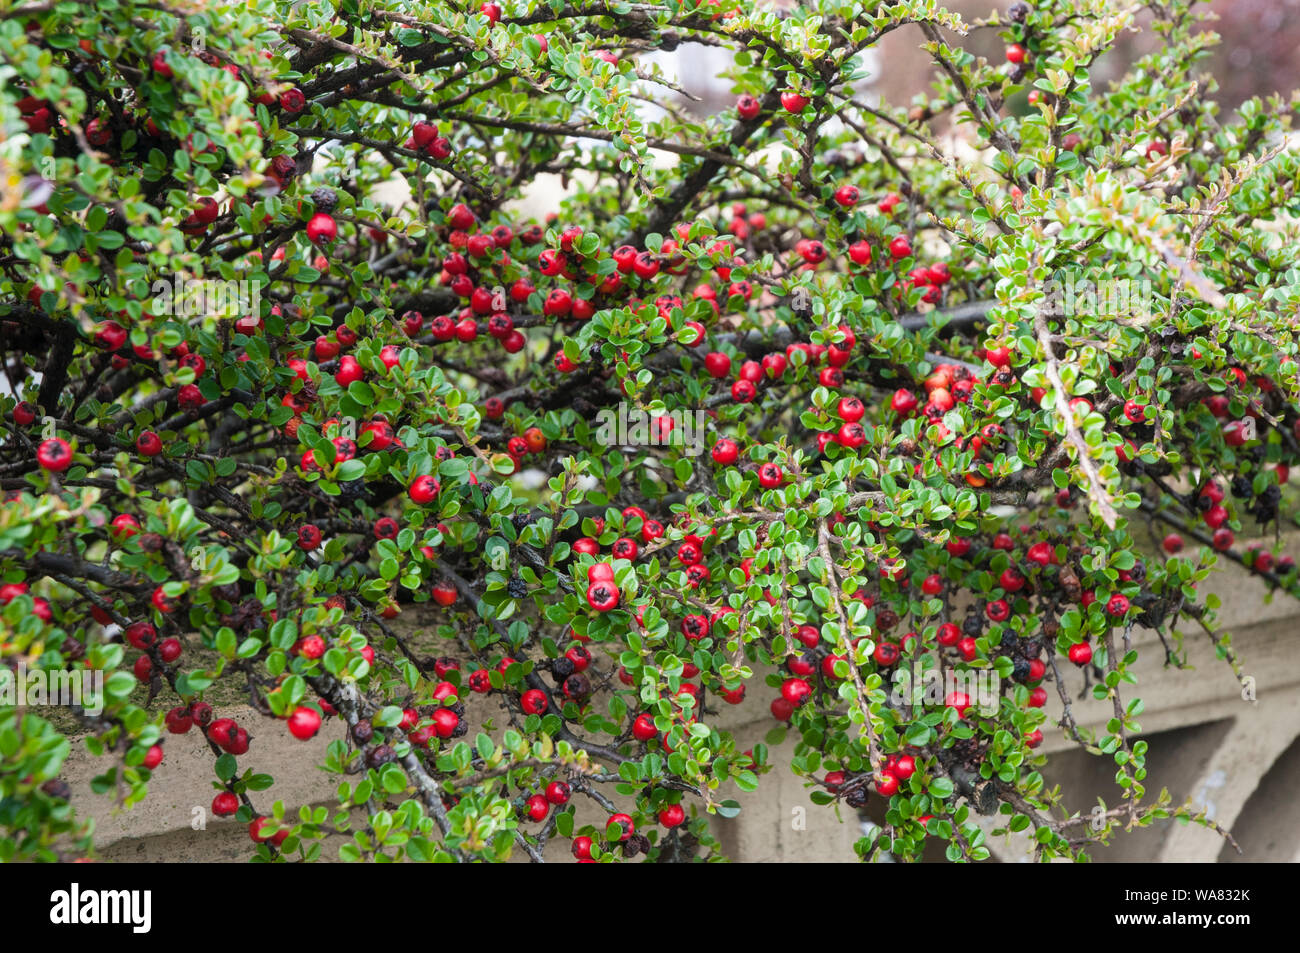 Cotoneaster horizontal ist ein sprießender Laubstrauch, der im späten Frühjahr mit roten Beeren blüht, wird für Absicherungen oder Bodenbedeckung verwendet und ist vollkommen winterhart Stockfoto